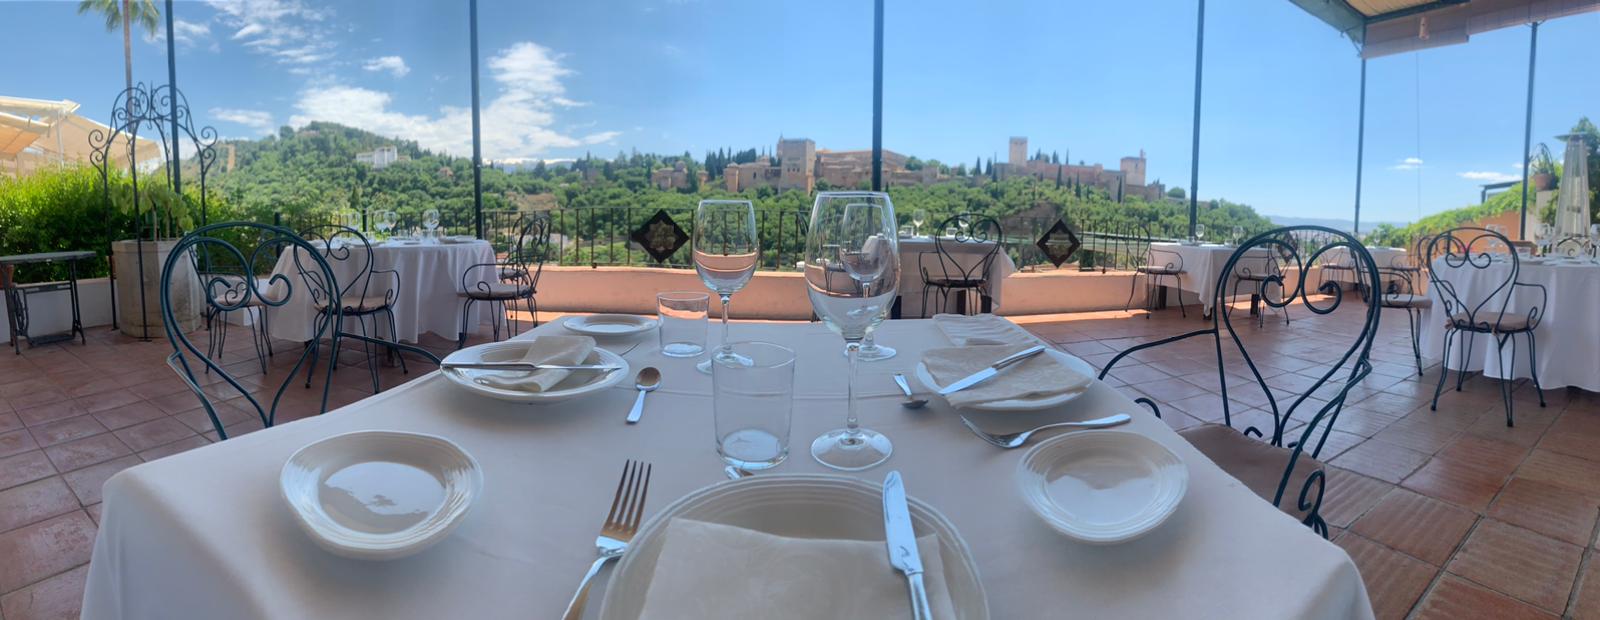 Restaurante Carmen Las Tomasas Albaicín views Alhambra Granada Romantic Paseo de los Tristes city center